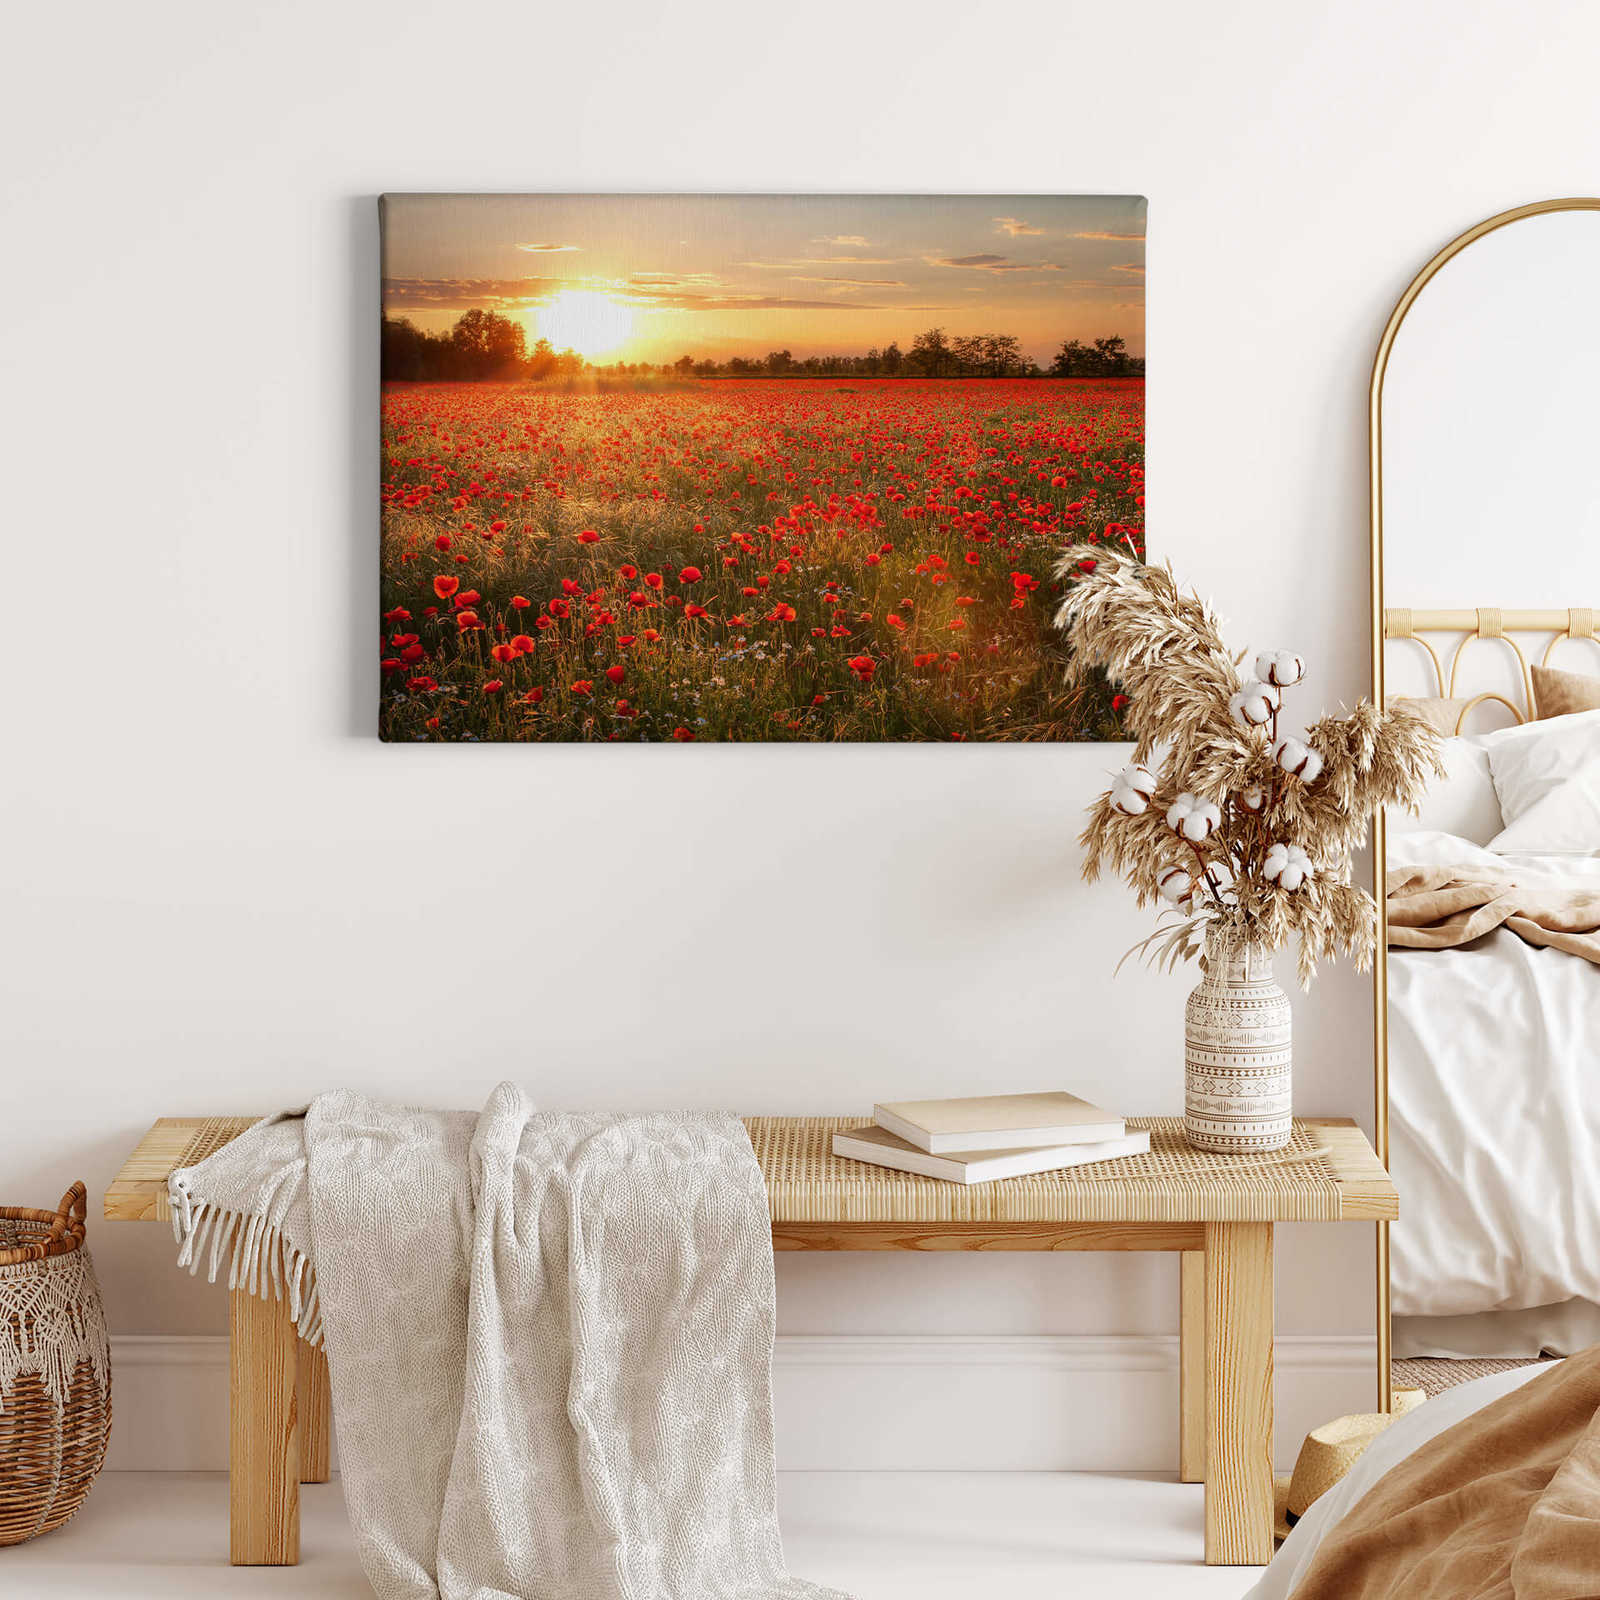             Canvas schilderij met klaprozenveld in zonsondergang - 0,70 m x 0,50 m
        